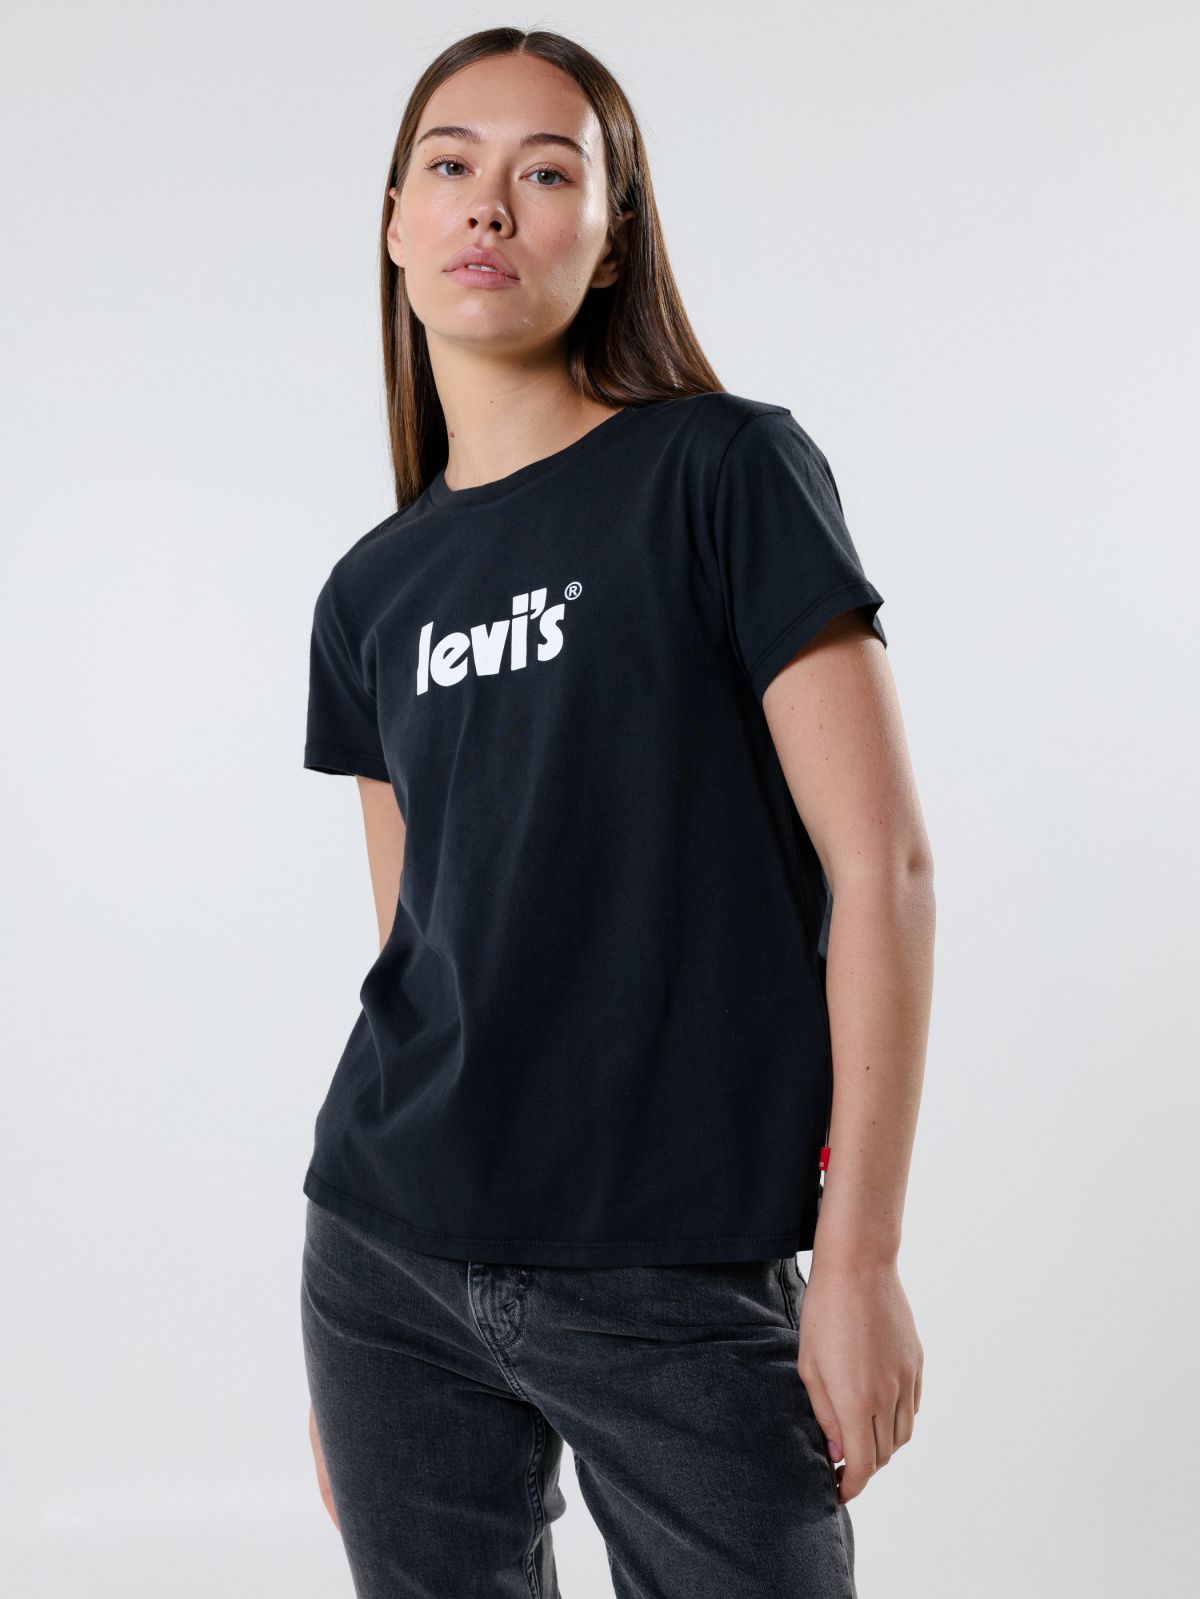  טי שירט עם הדפס לוגו של LEVIS